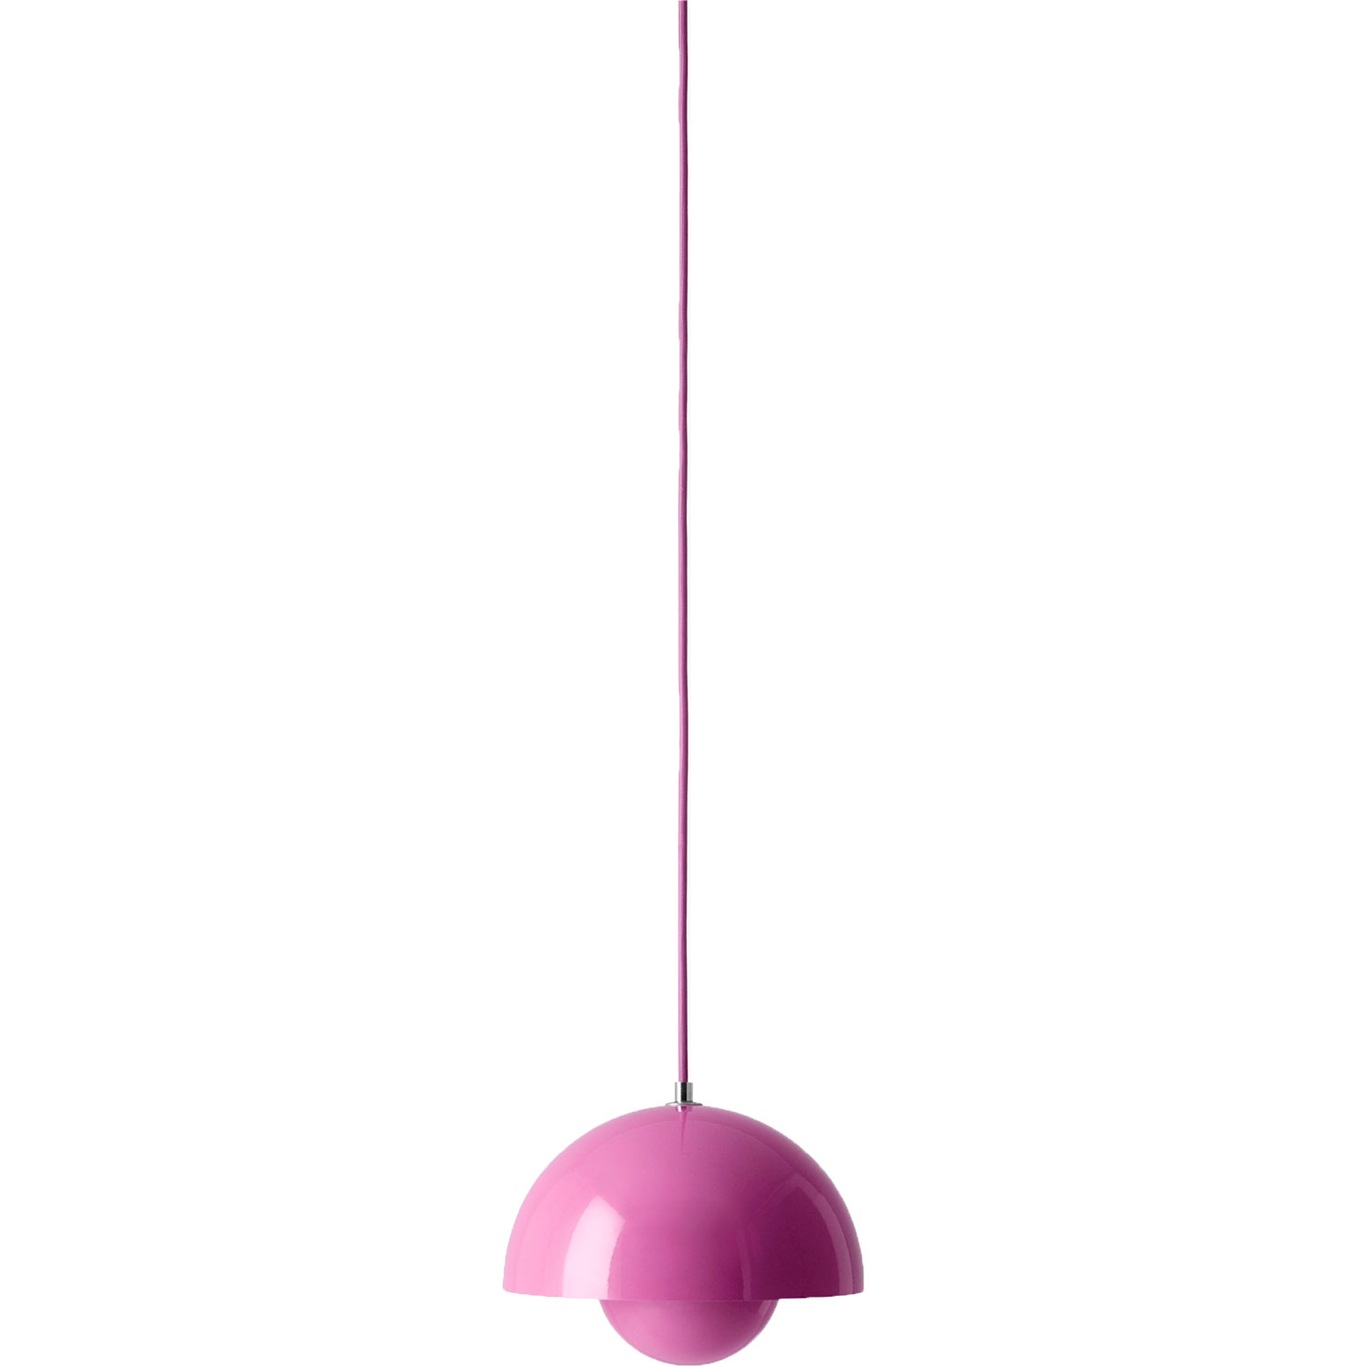 Flowerpot VP1 Hanglamp, Tangy Pink